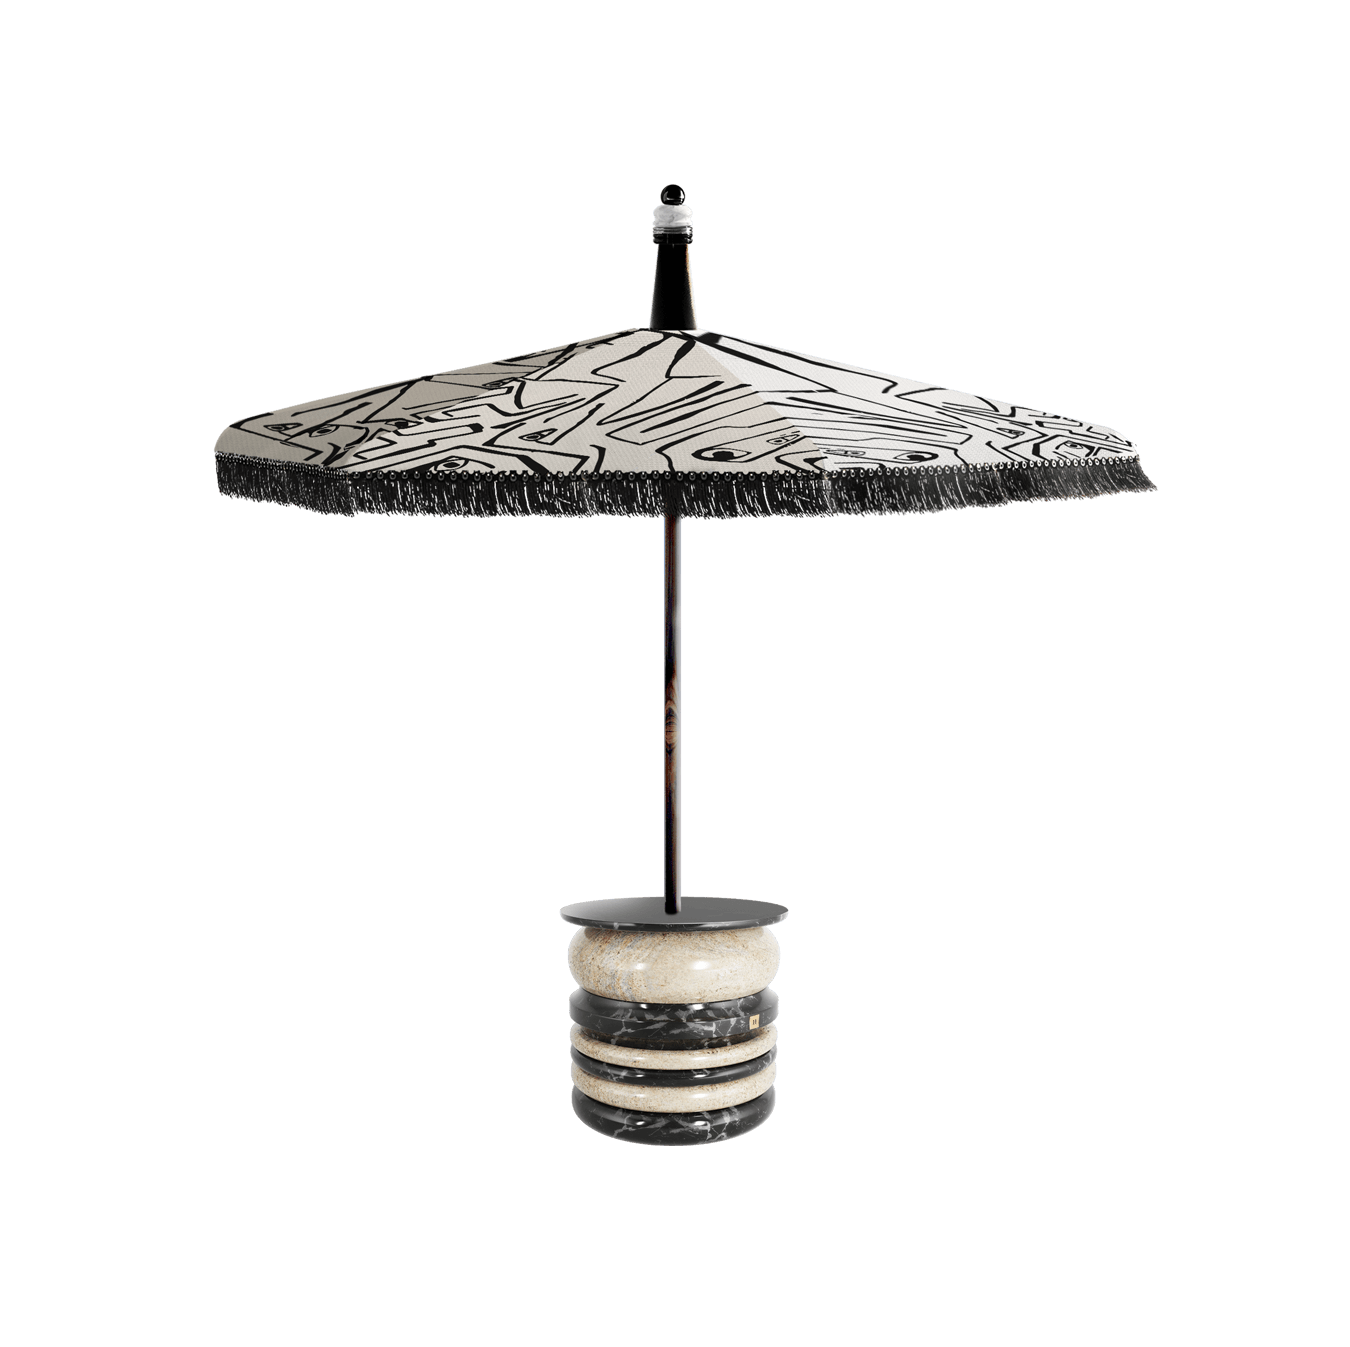 luxury parasol for contemporary garden sombrilla designs